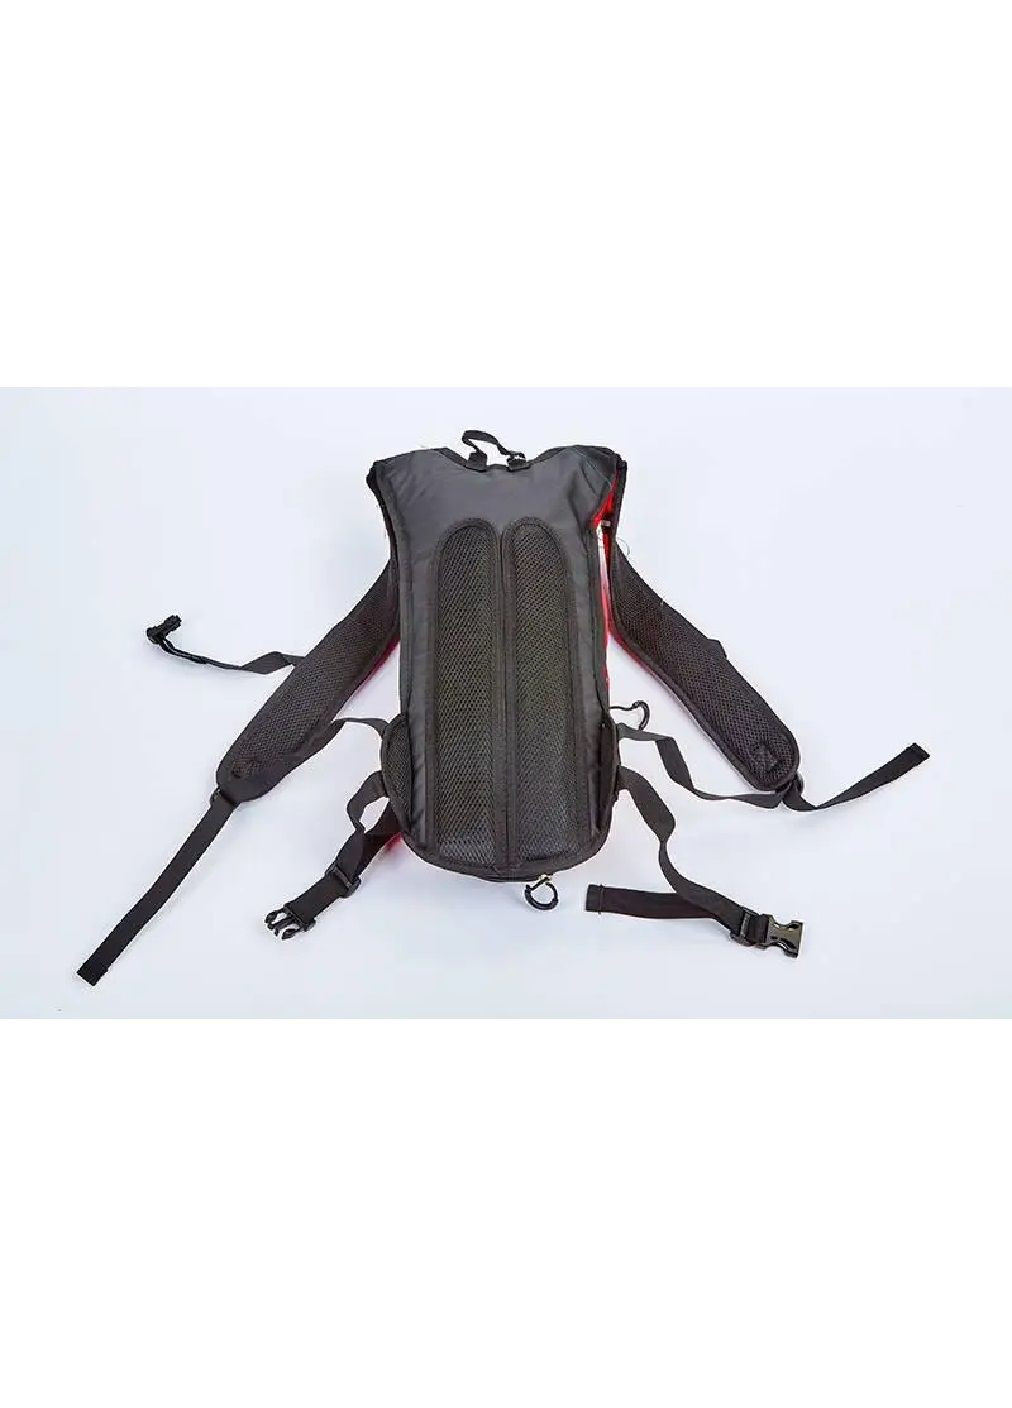 Рюкзак мото вело сумка с местом под питьевую воду питьевой системой на 2 отделения 6 л 49х16х8 см (476640-Prob) Черный с красным Unbranded (285799457)